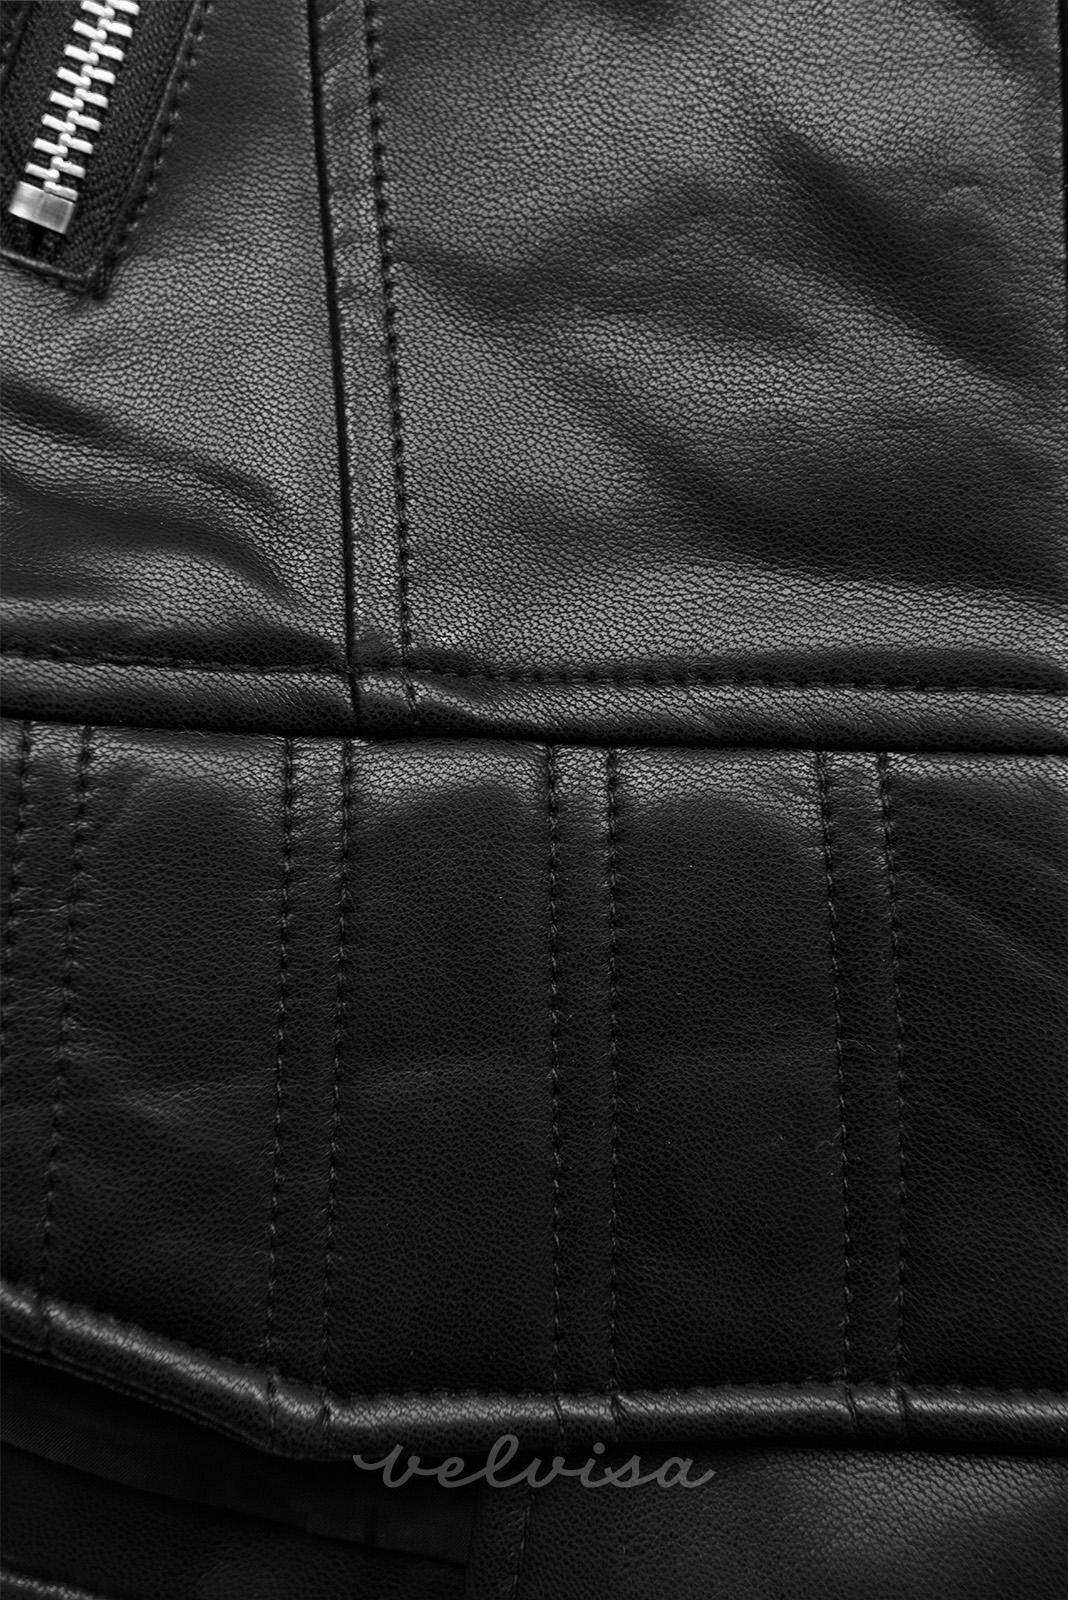 Crna kožna jakna s kosim patentnim zatvaračem